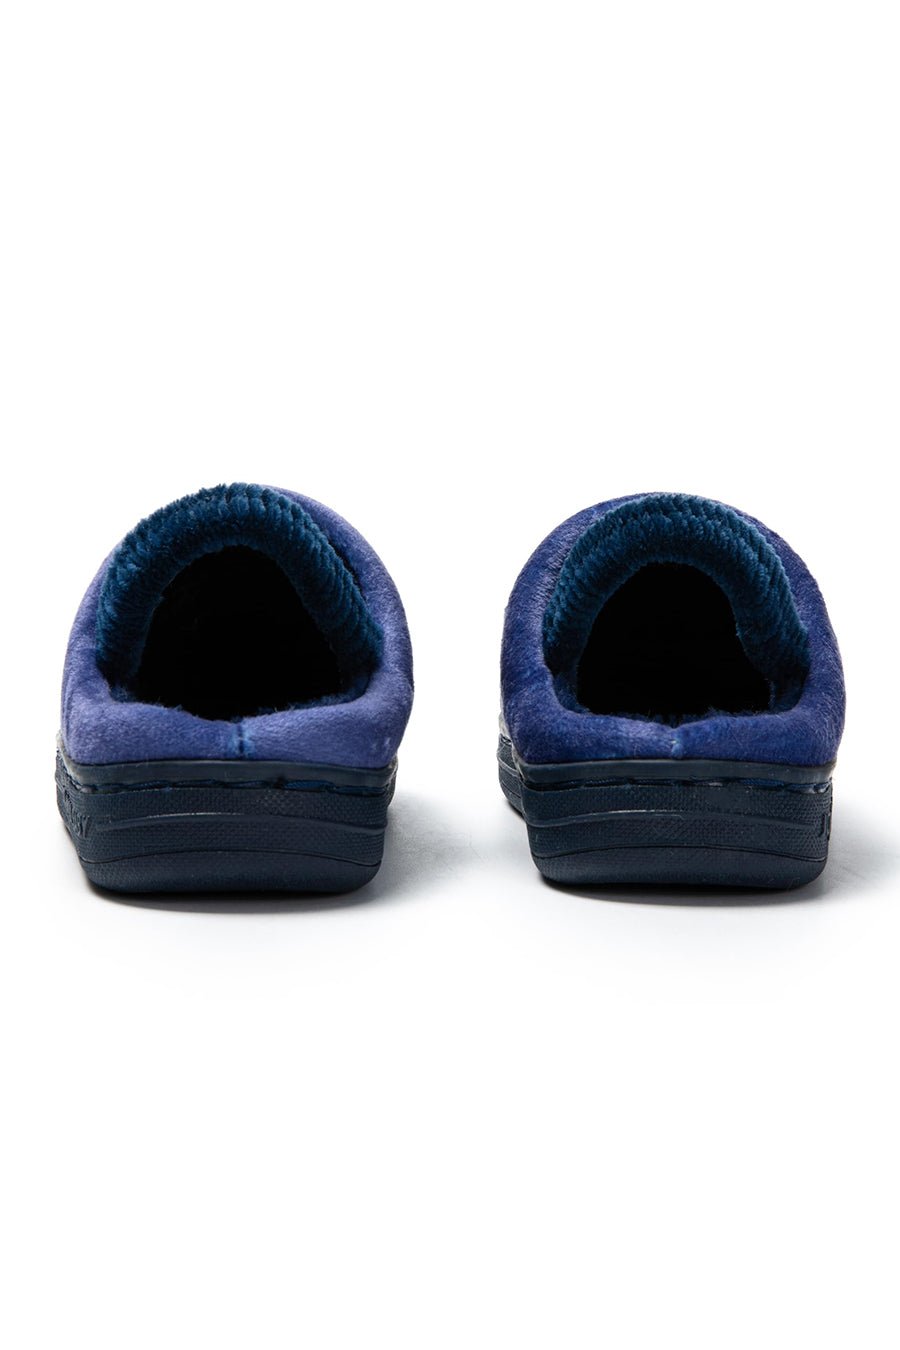 JOMIX Pantofole Bambini Invernali Ciabatte con Chiusura Elastico MP8624